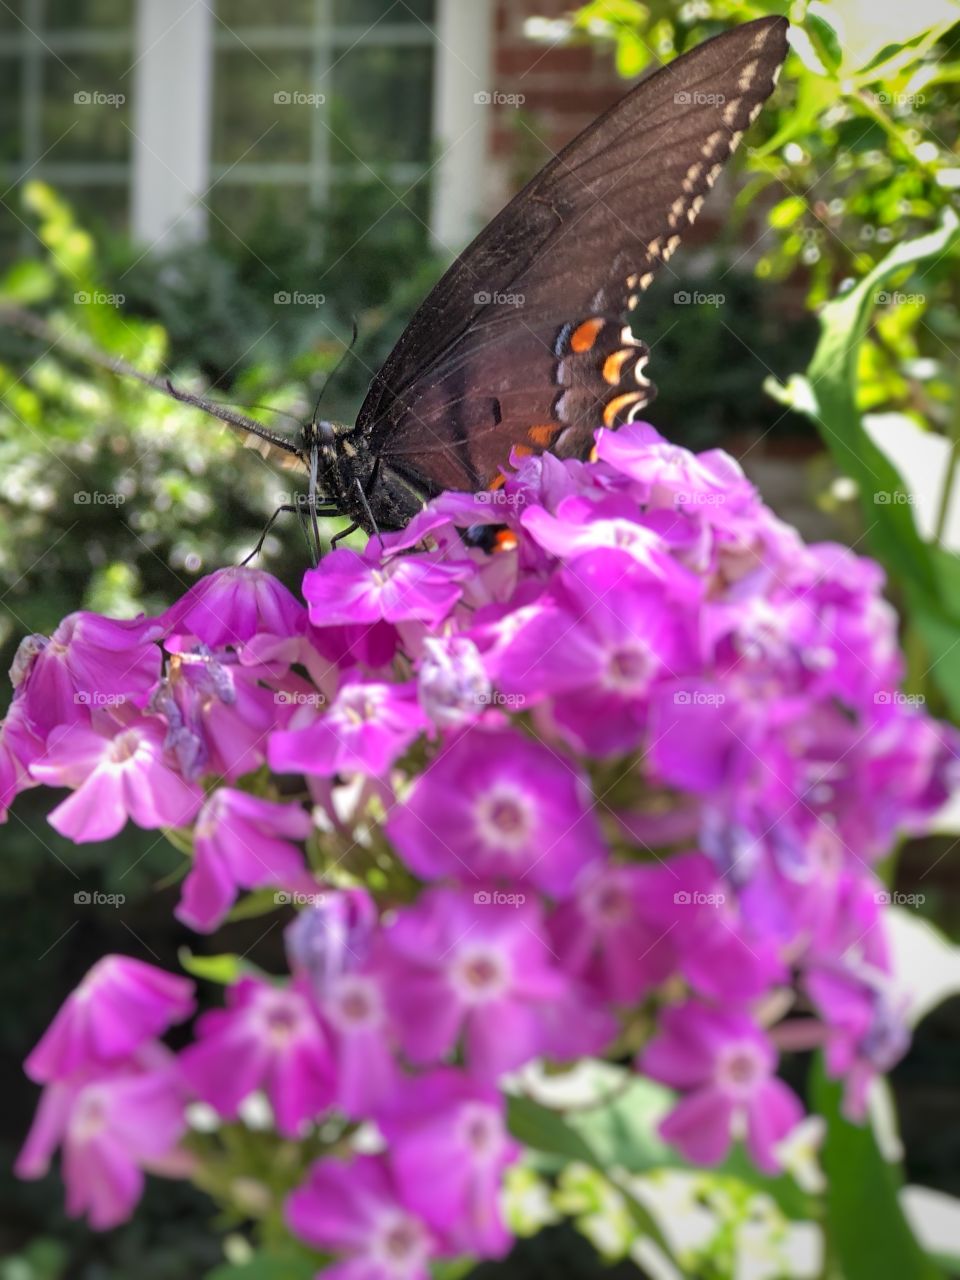 Butterfly profile on purple flowers in the garden